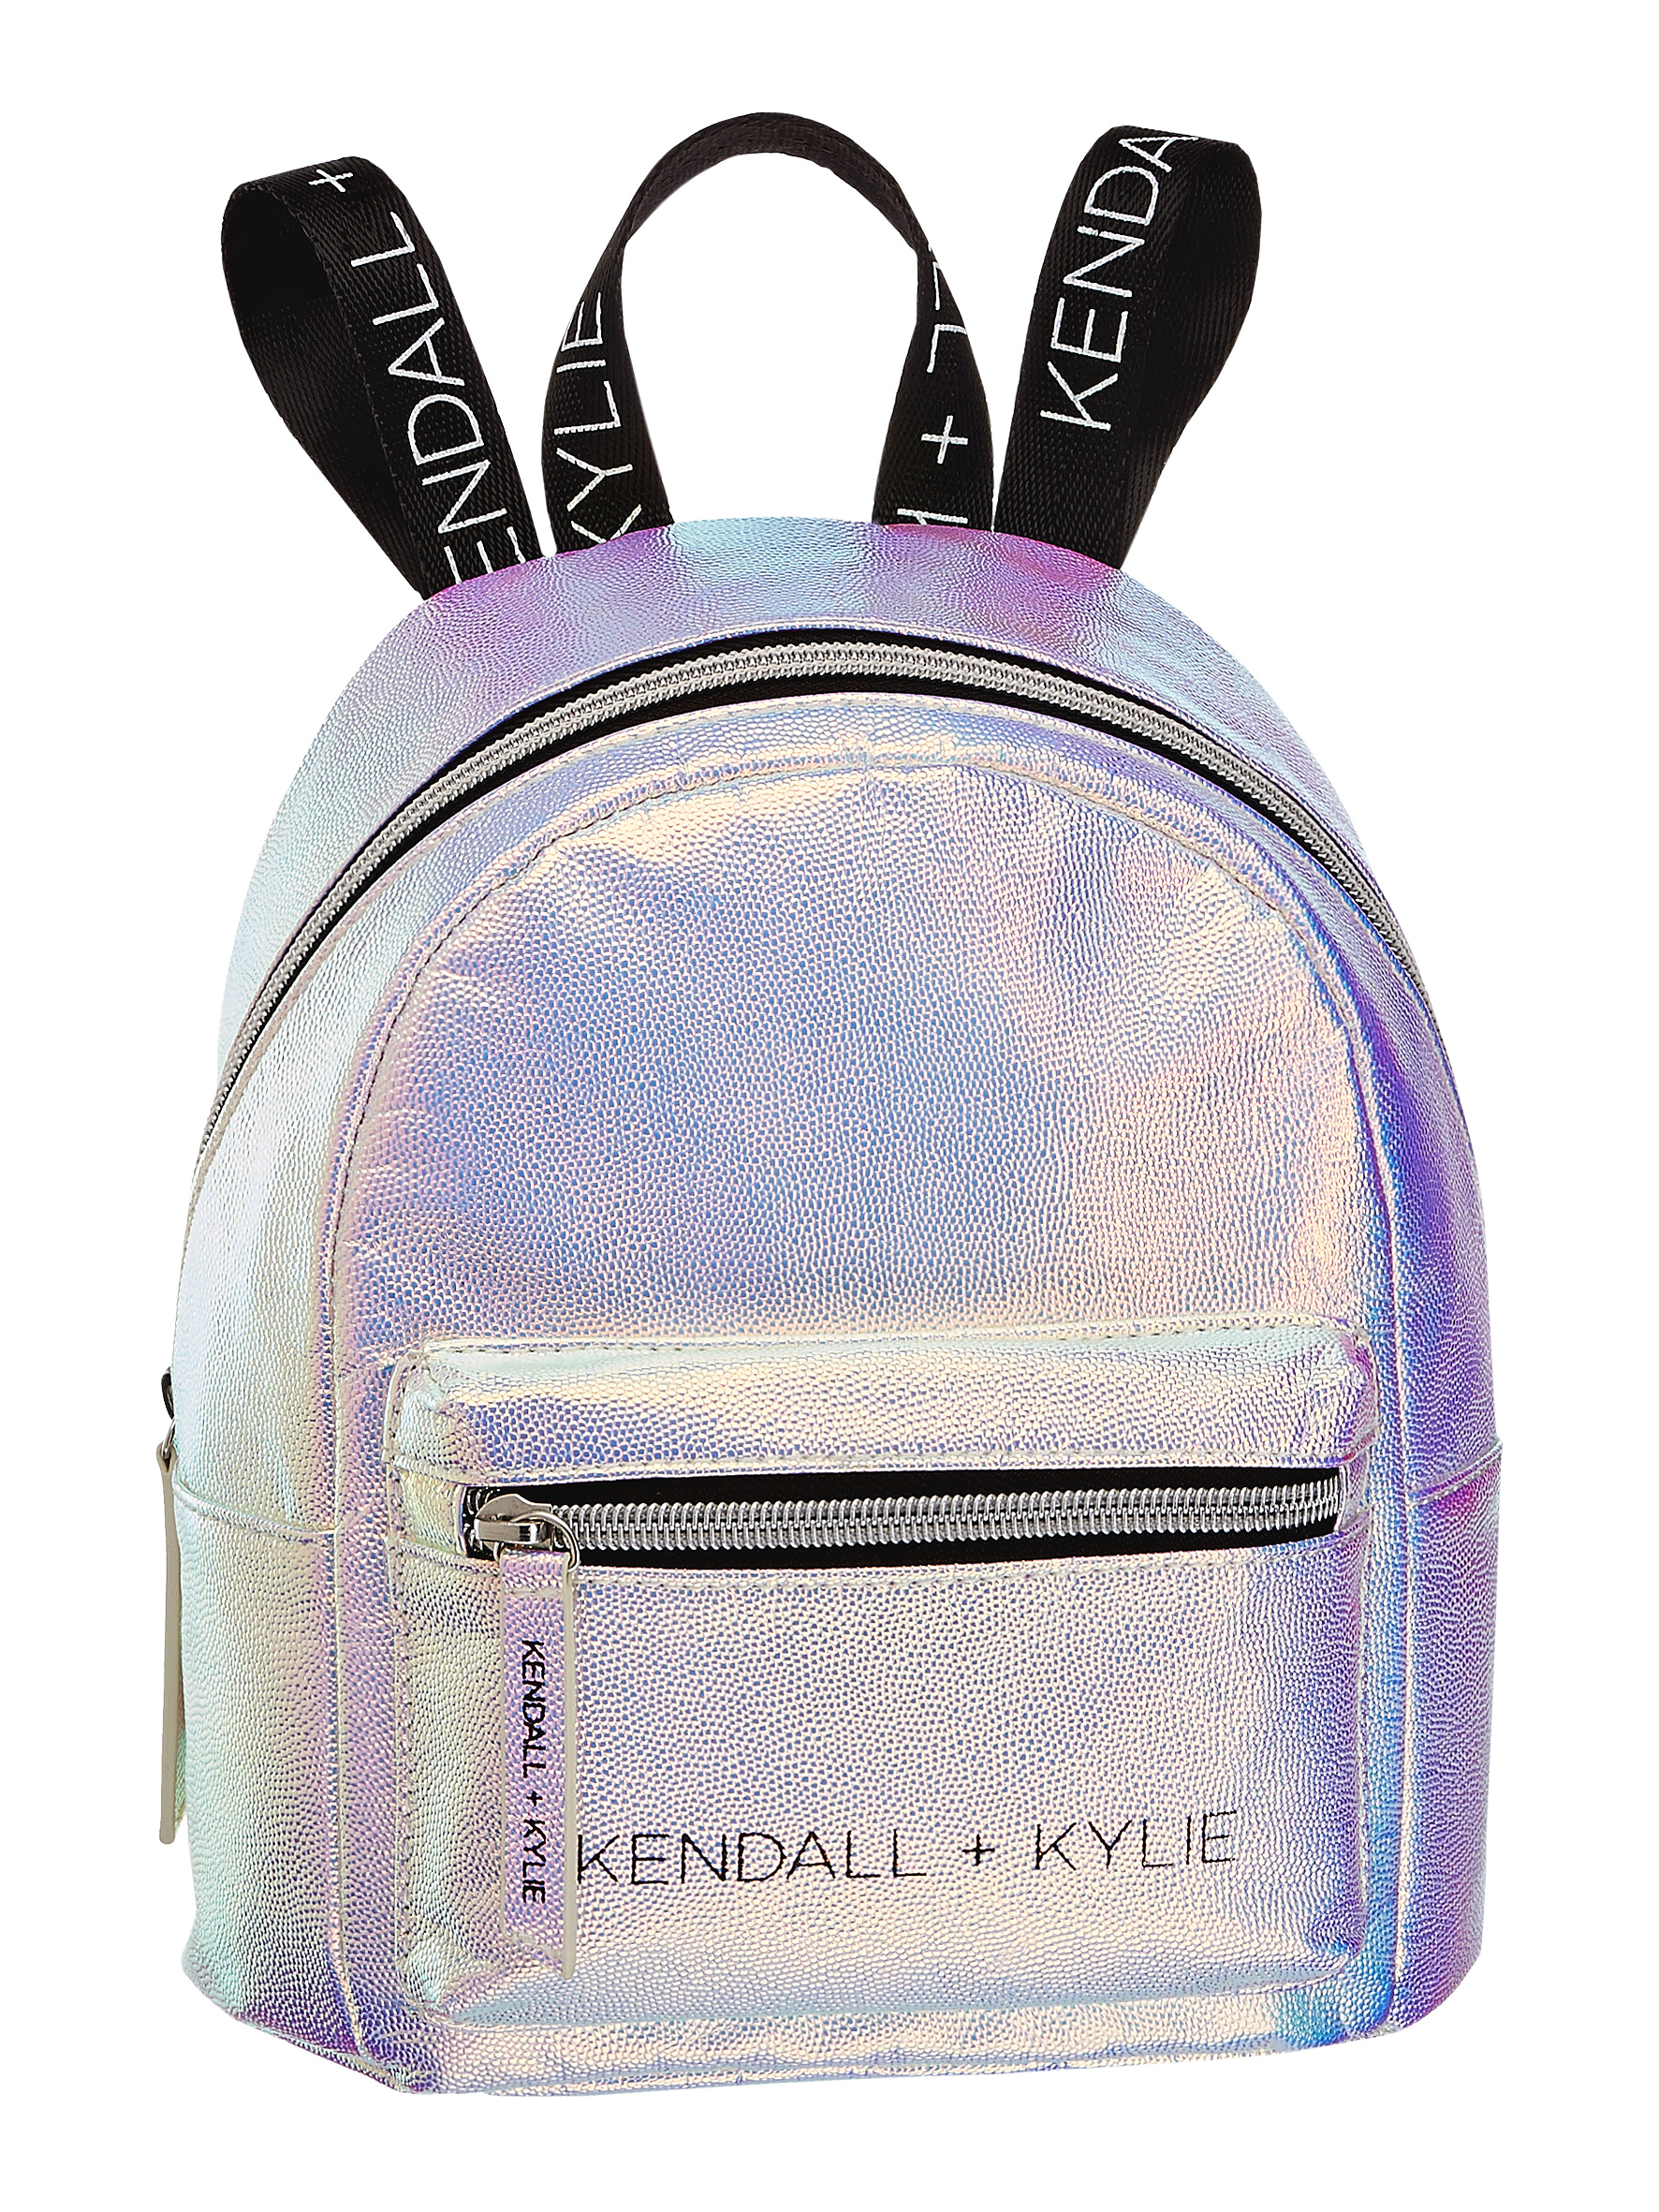 Figyelem: a Deichmann piacra dobja második exkluzív táskakollekcióját  Kendall és Kylie Jennerrel - Blikk